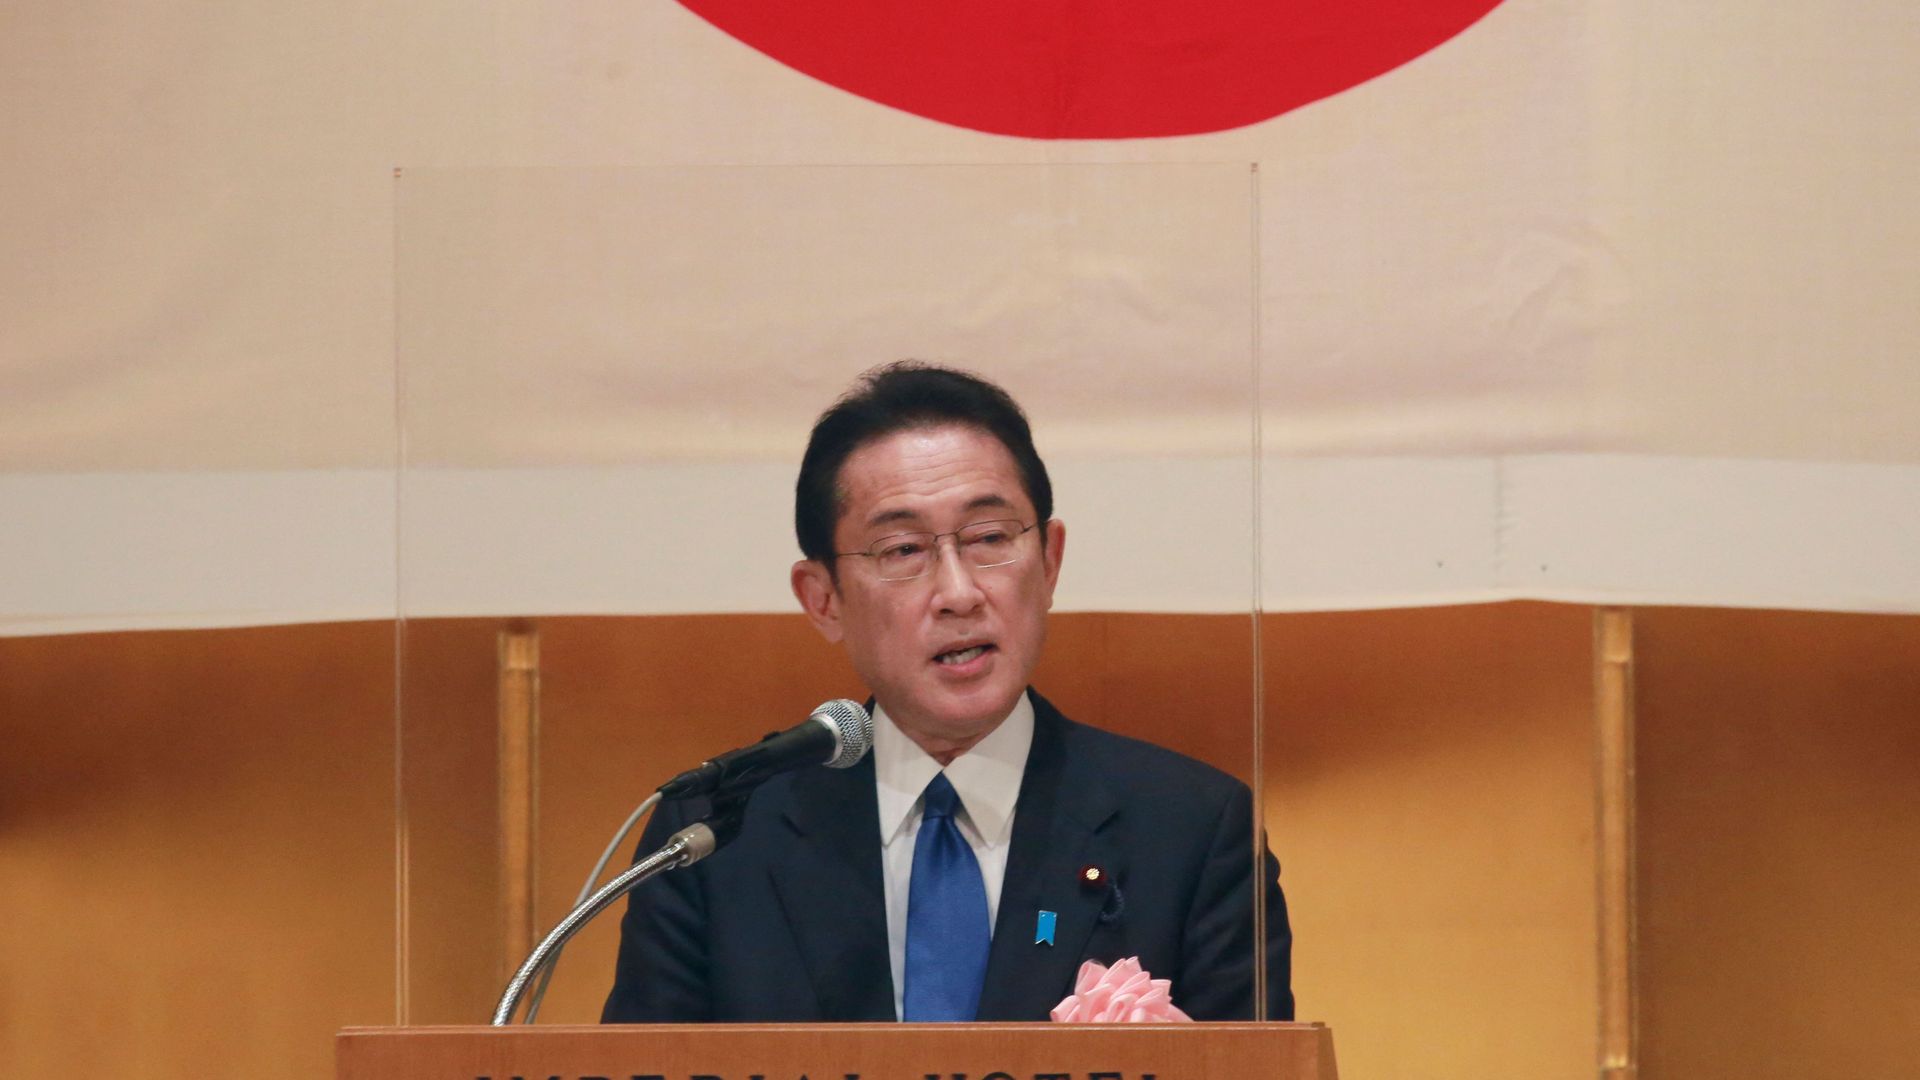 Japan's Prime Minister Fumio Kishida